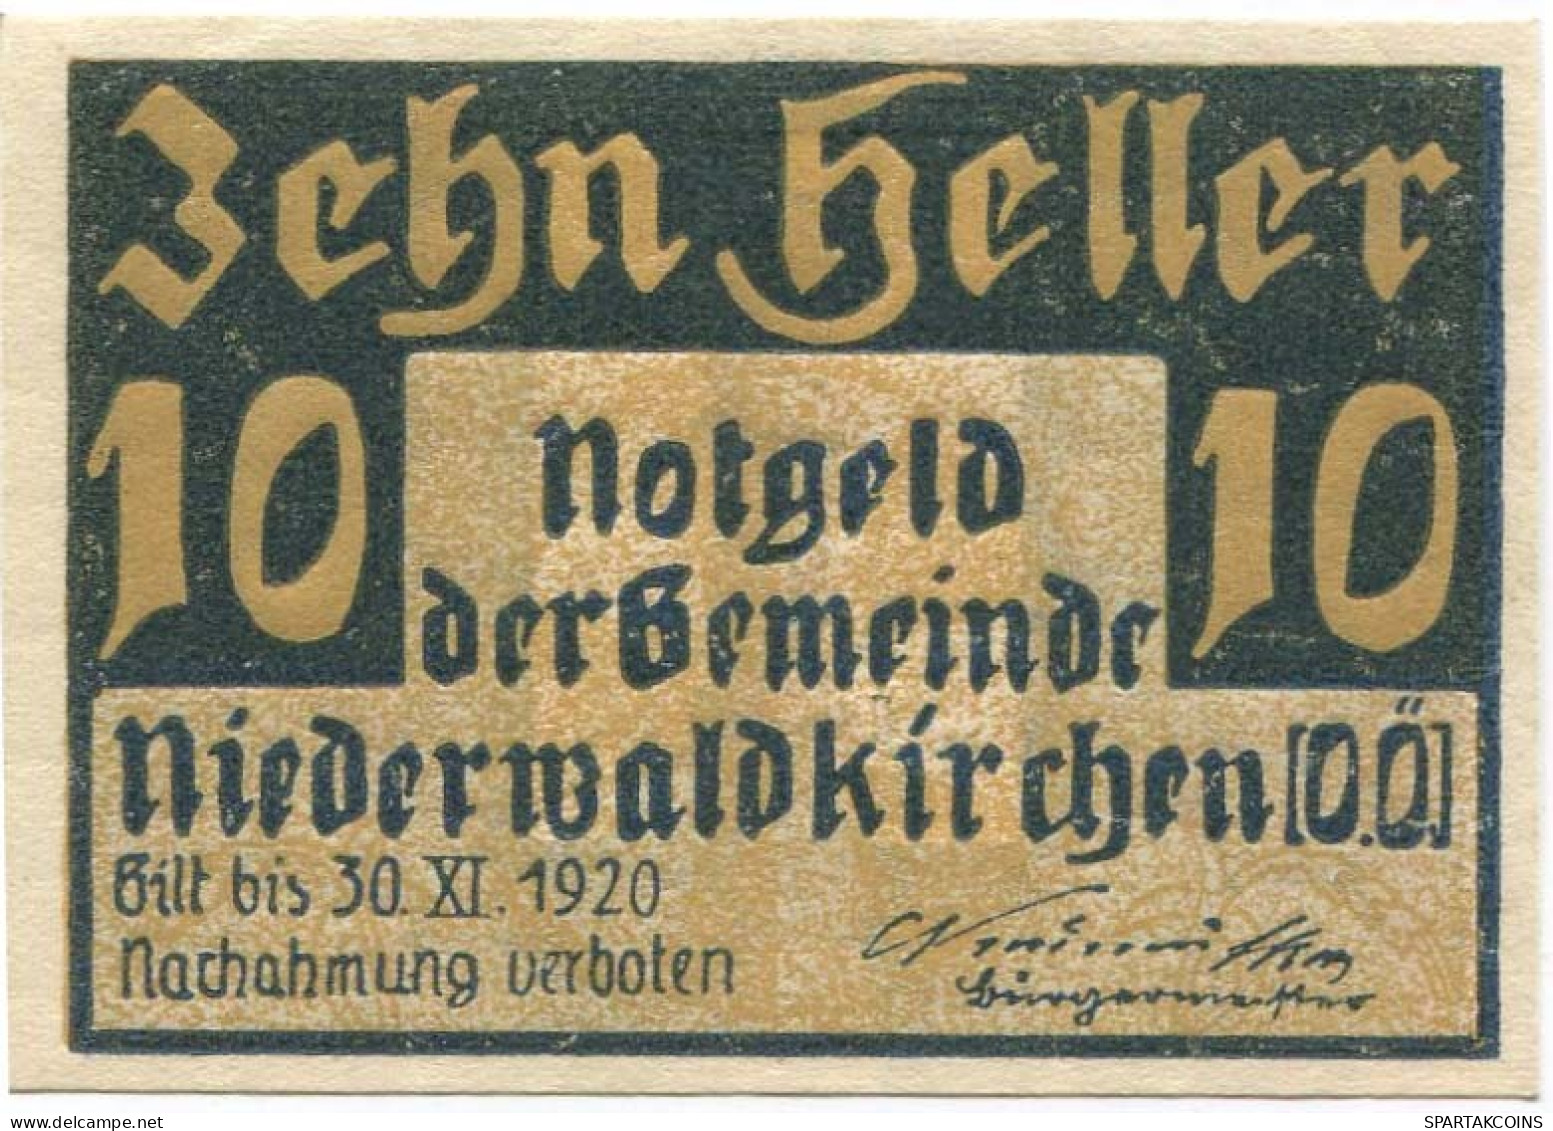 10 HELLER 1920 Stadt NIEDERWALDKIRCHEN Oberösterreich Österreich Notgeld Papiergeld Banknote #PL773 - [11] Local Banknote Issues